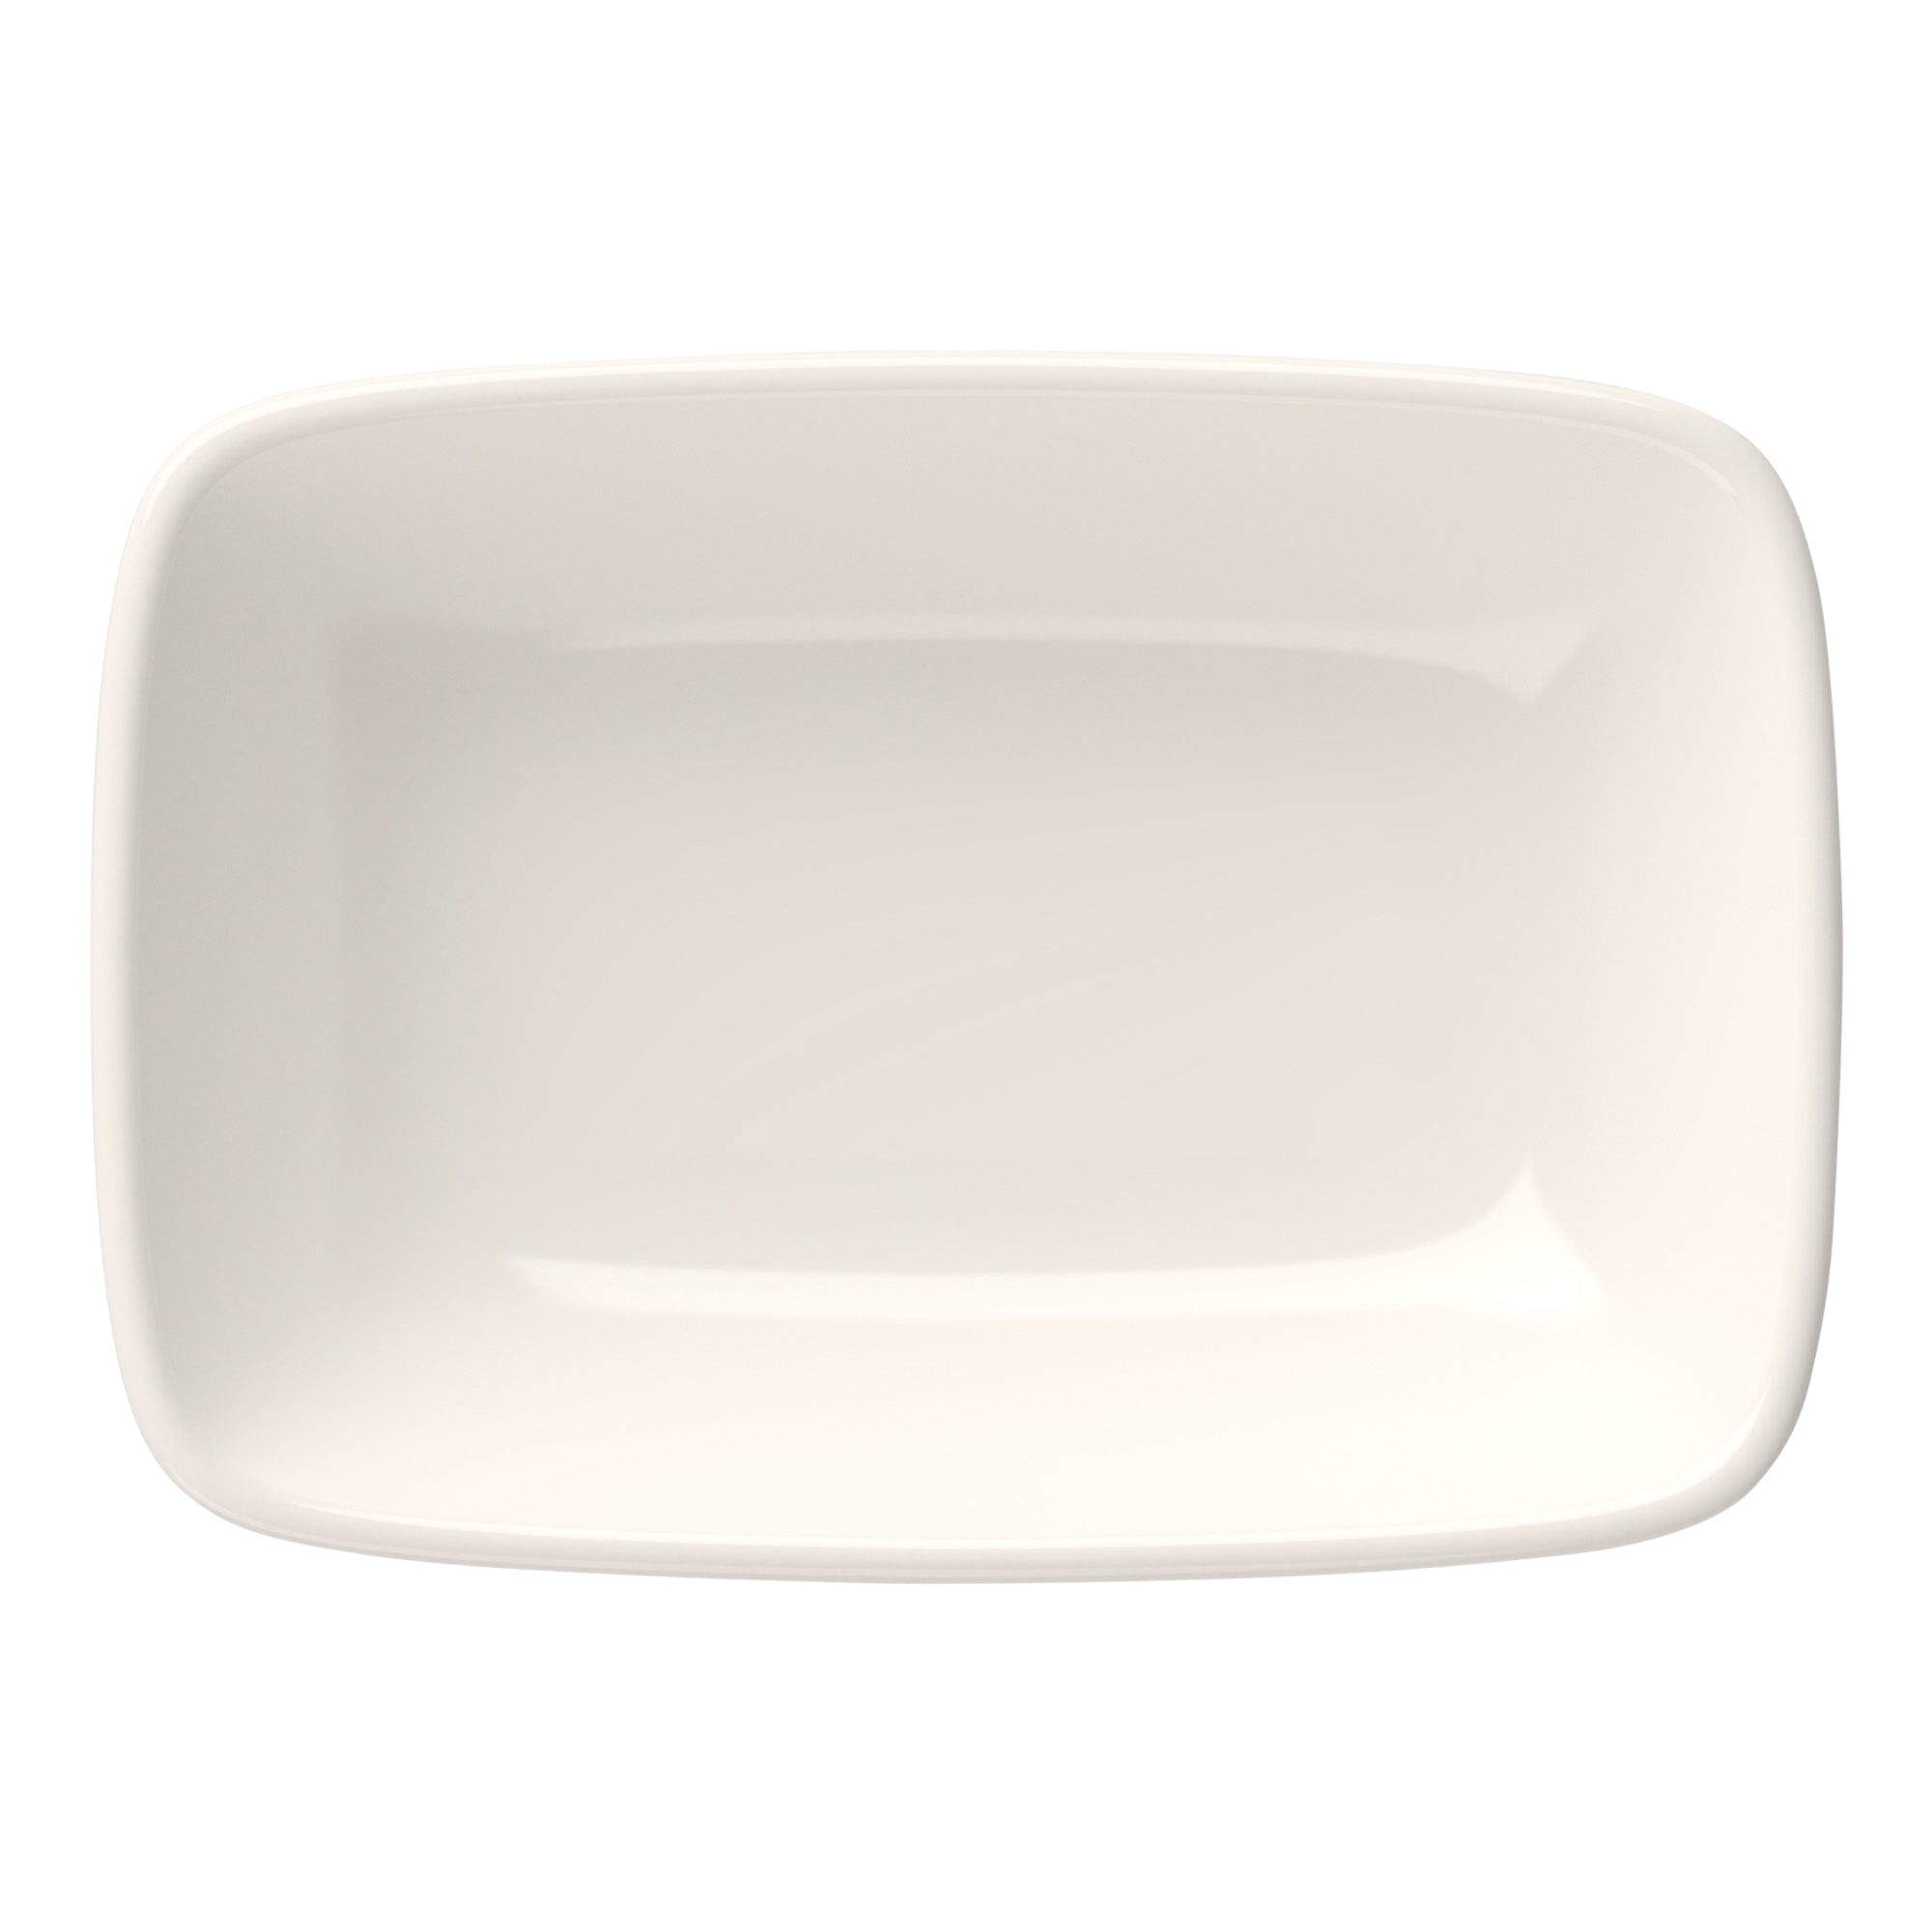 Quadro Porcelain Rectangular Platter 6.8"x4.8"